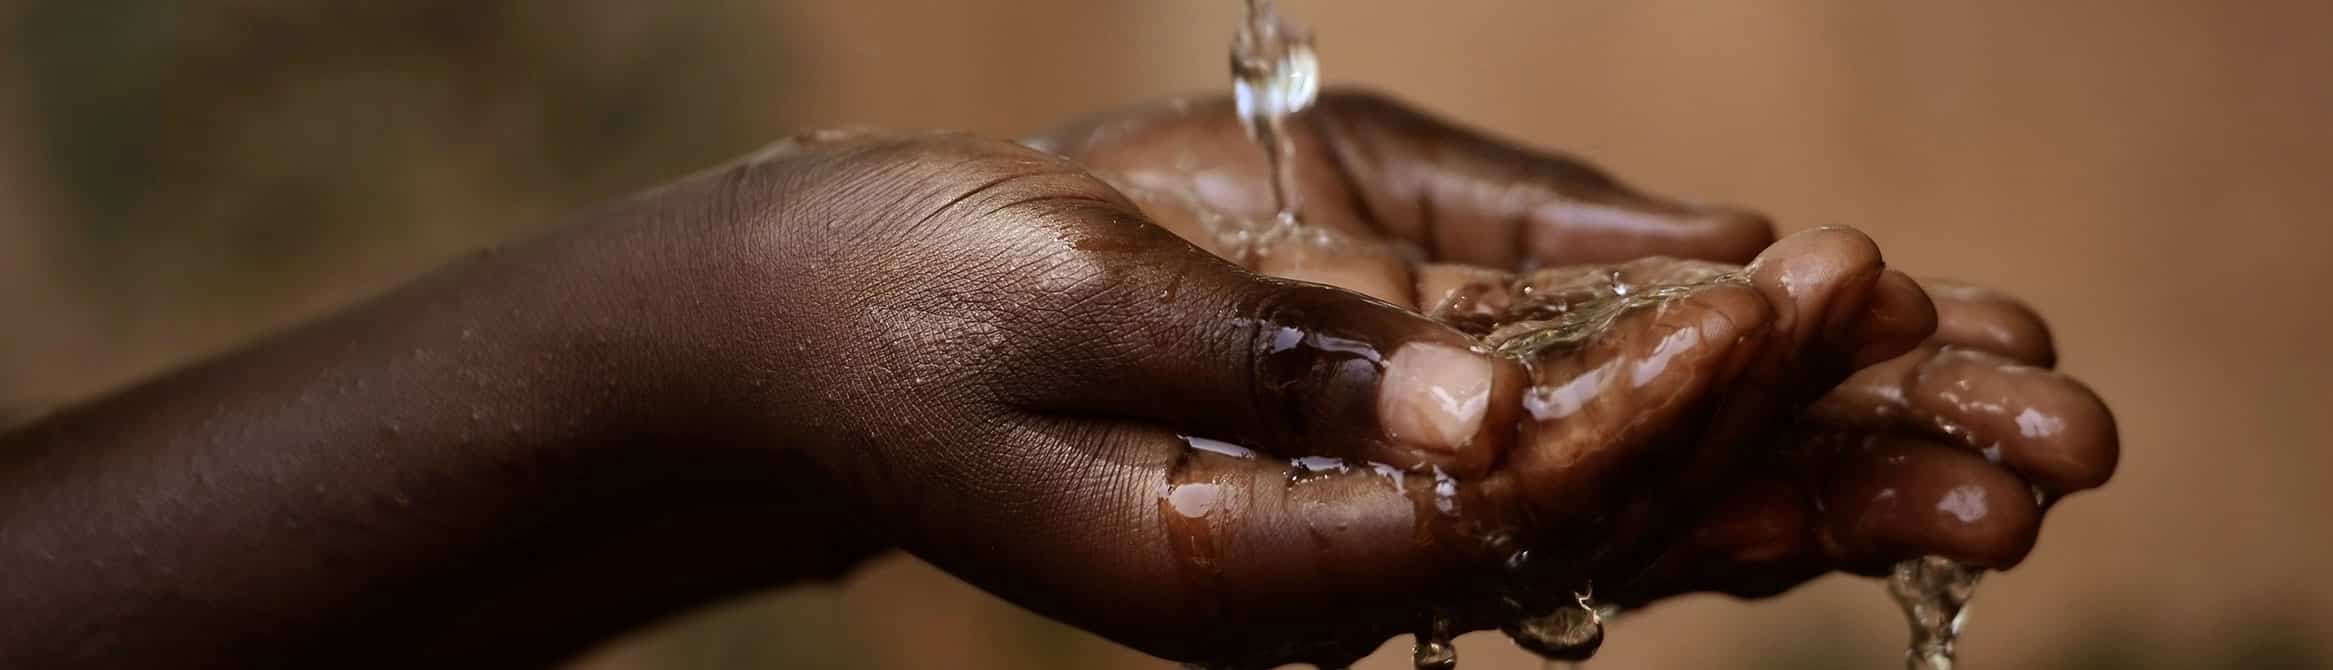 Sénégal – L’eau : ce liquide qui coule avec des problèmes